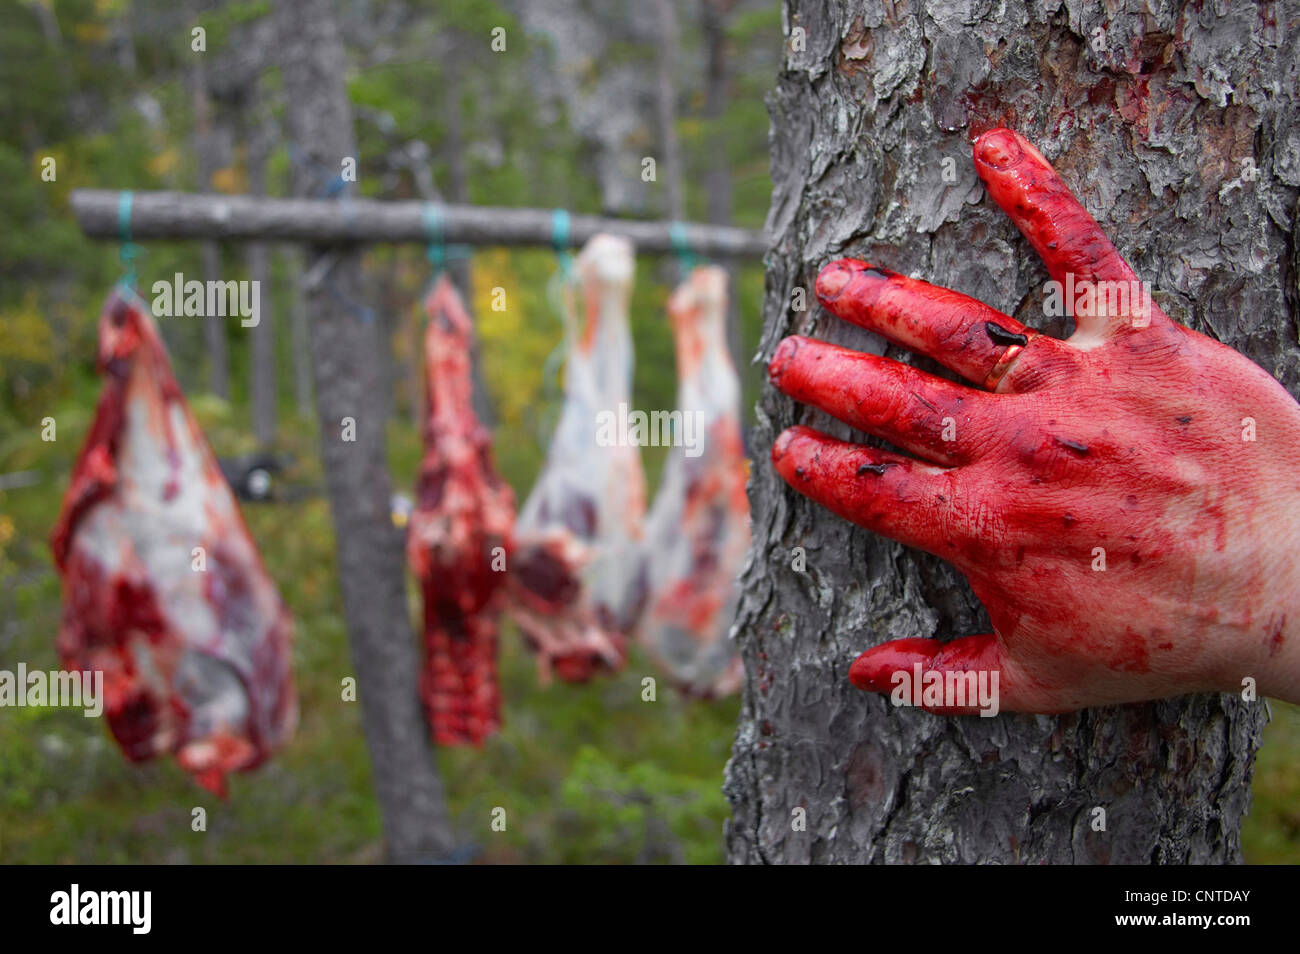 Le wapiti, l'orignal (Alces alces alces), morceaux d'un animal dépecé suspendu dans la forêt entre les arbres, dans le foregroung une main couverte de sang, de la Norvège, de Nord-Trondelag, Flatanger Banque D'Images